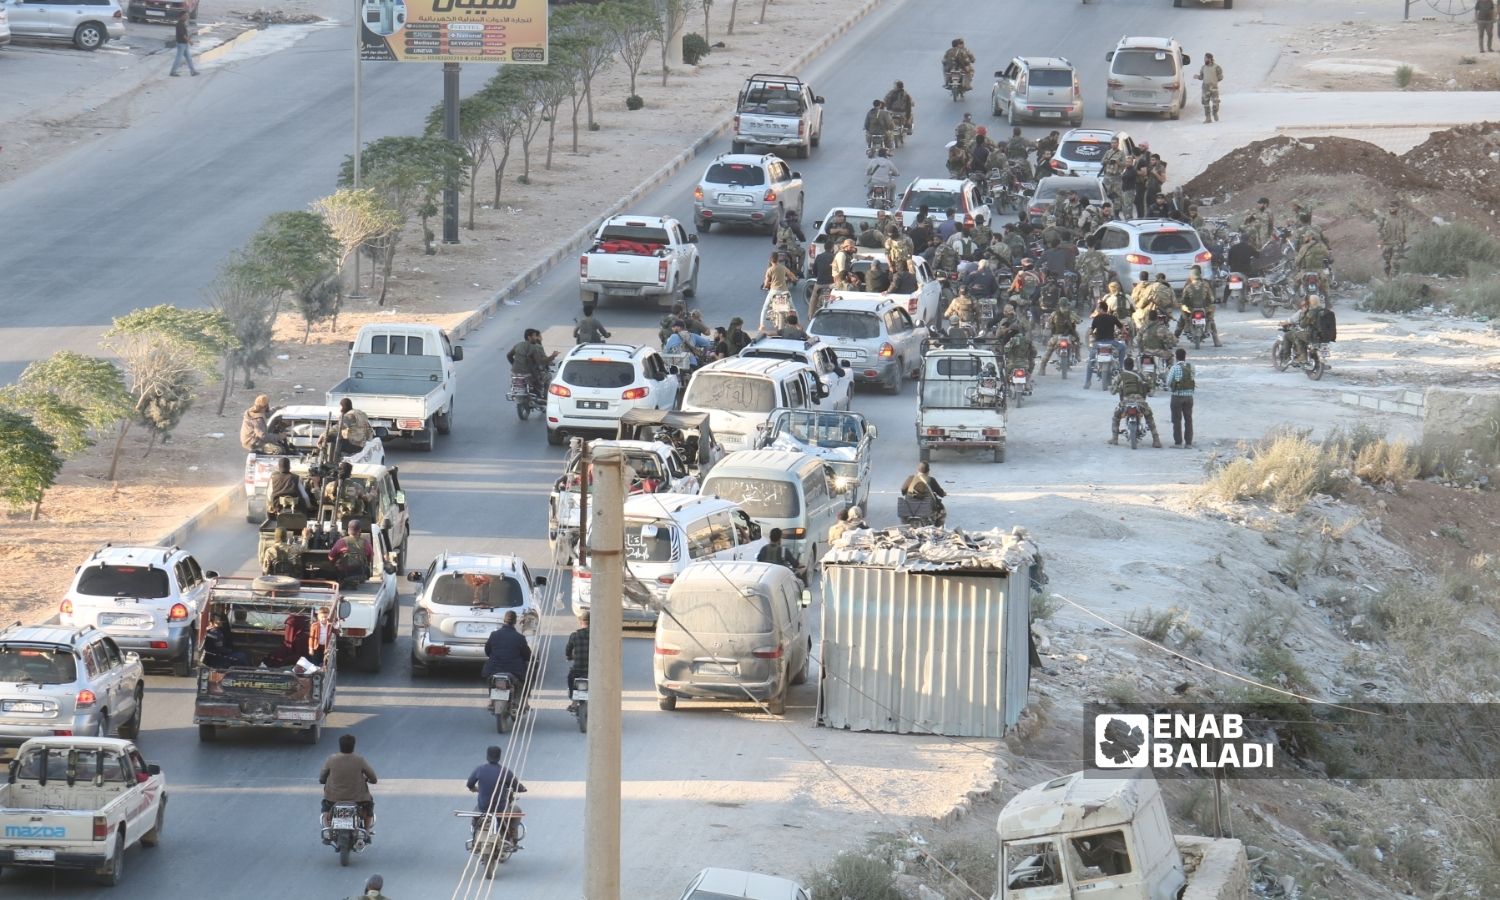 مجموعة من "الفيلق الثالث" التابع لـ"الجيش الوطني السوري" المدعوم من تركيا على مدخل مدينة اعزاز الغربي بعد انسحابها من عفرين بريف حلب- 13 من تشرين الأول 2022 (عنب بلدي)